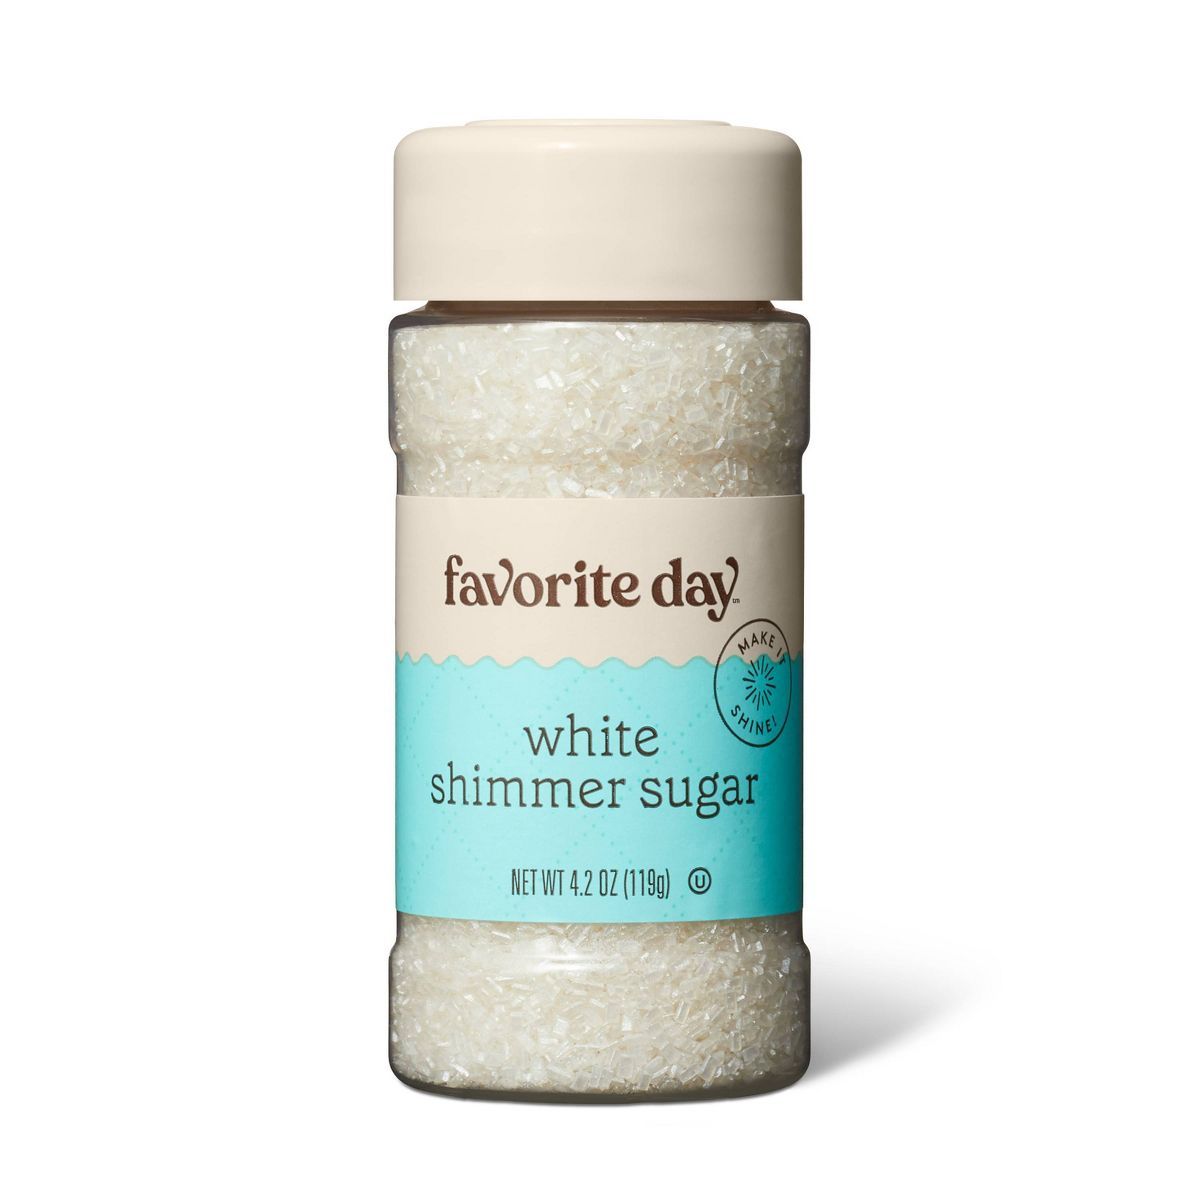 White Shimmer Sugar - 4.2oz - Favorite Day™ | Target